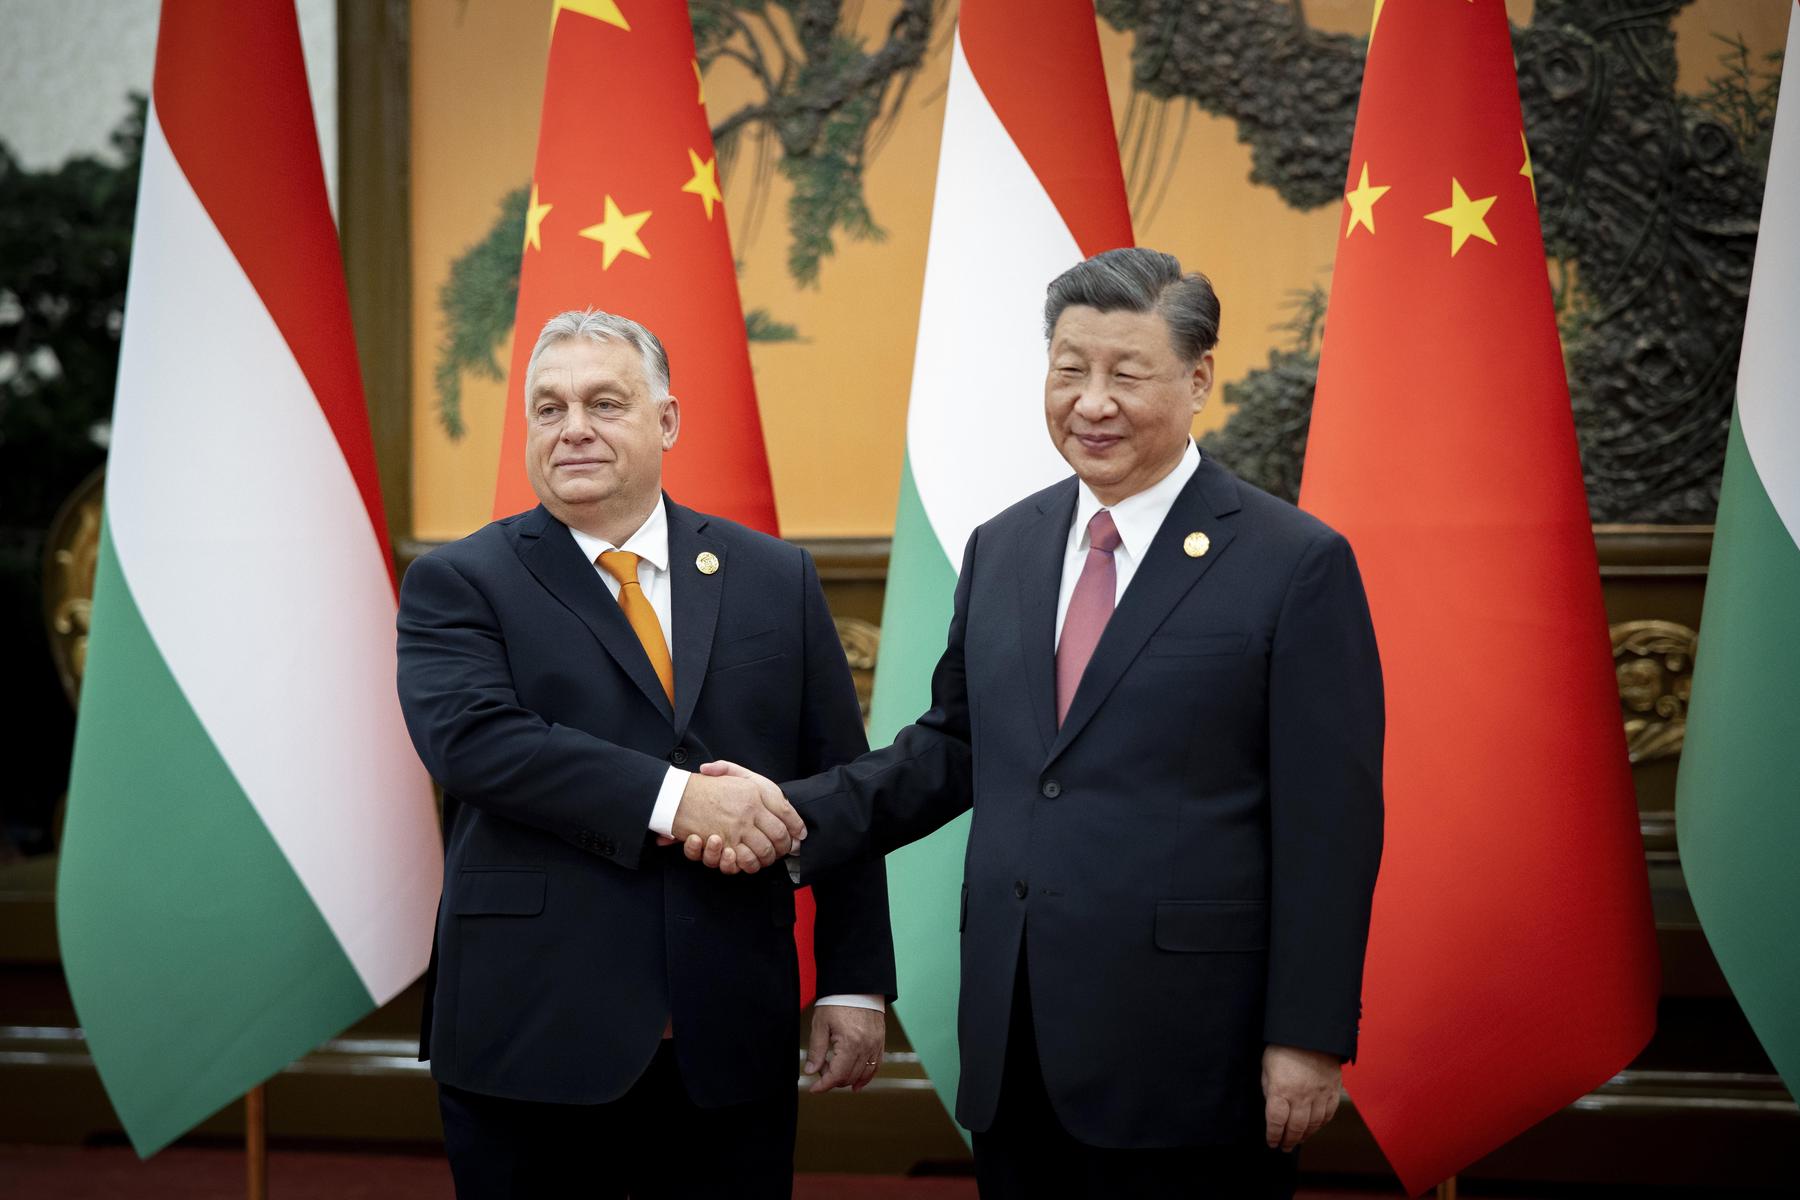 Erste Europa-Reise seit fünf Jahren: Xi Jinping besucht am Mittwoch Viktor Orban in Ungarn